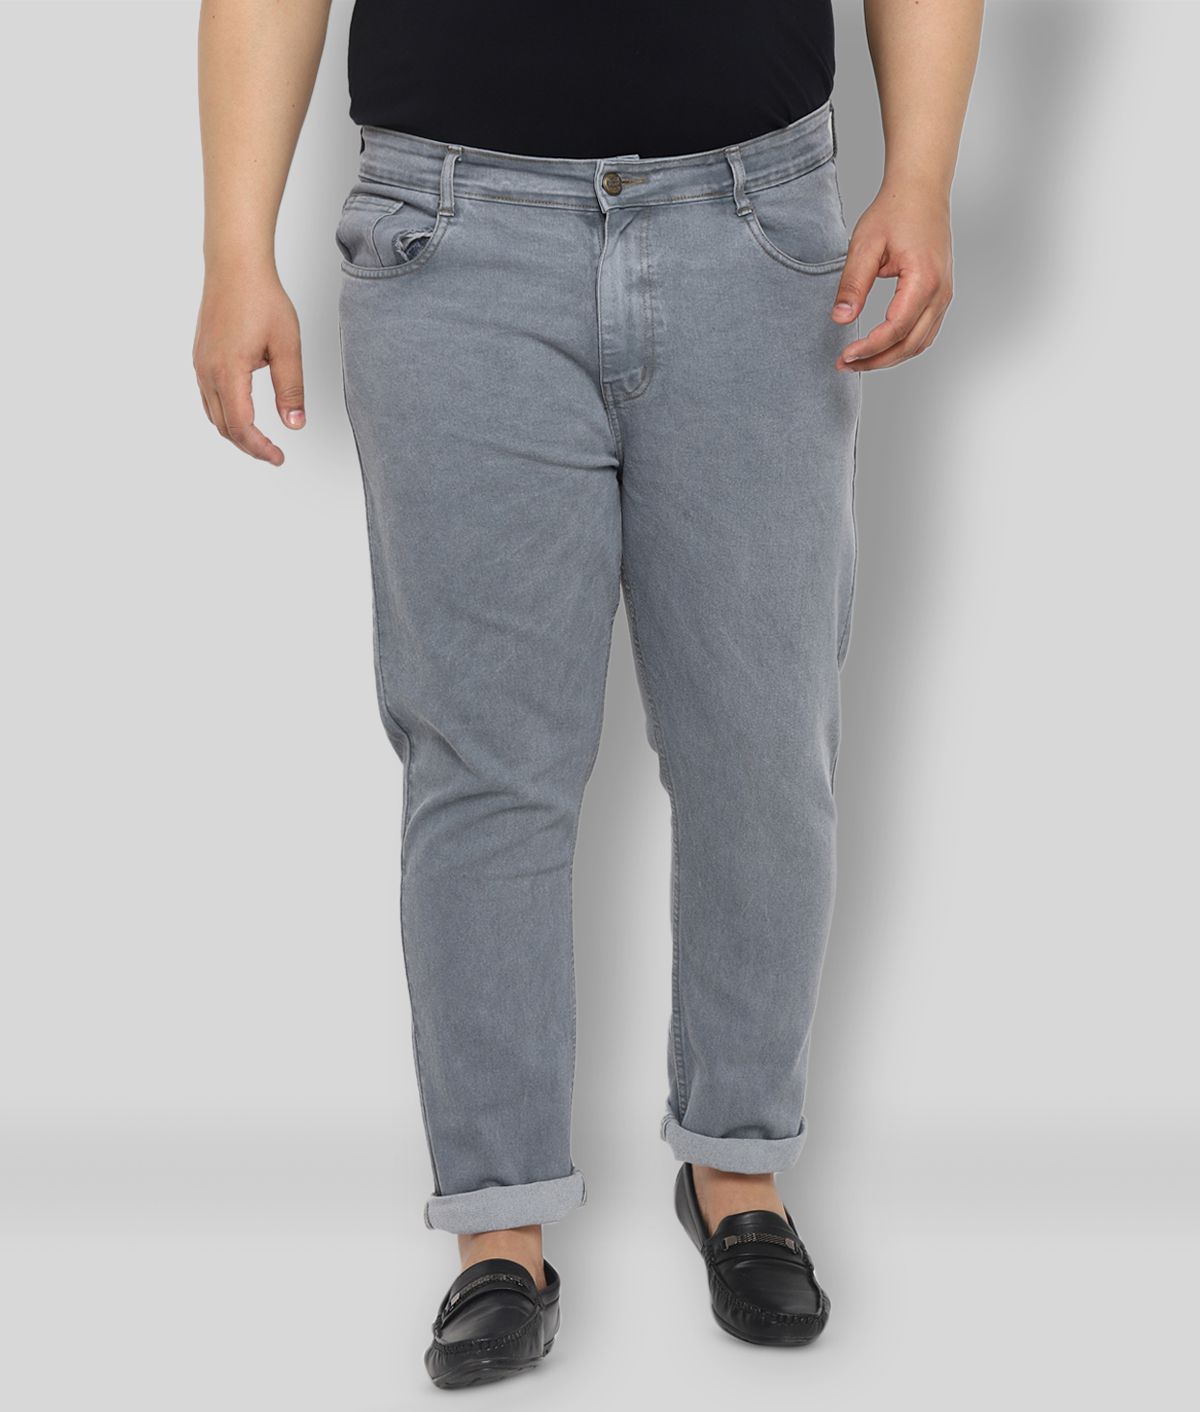     			Urbano Plus - Grey Denim Regular Fit Men's Jeans ( Pack of 1 )